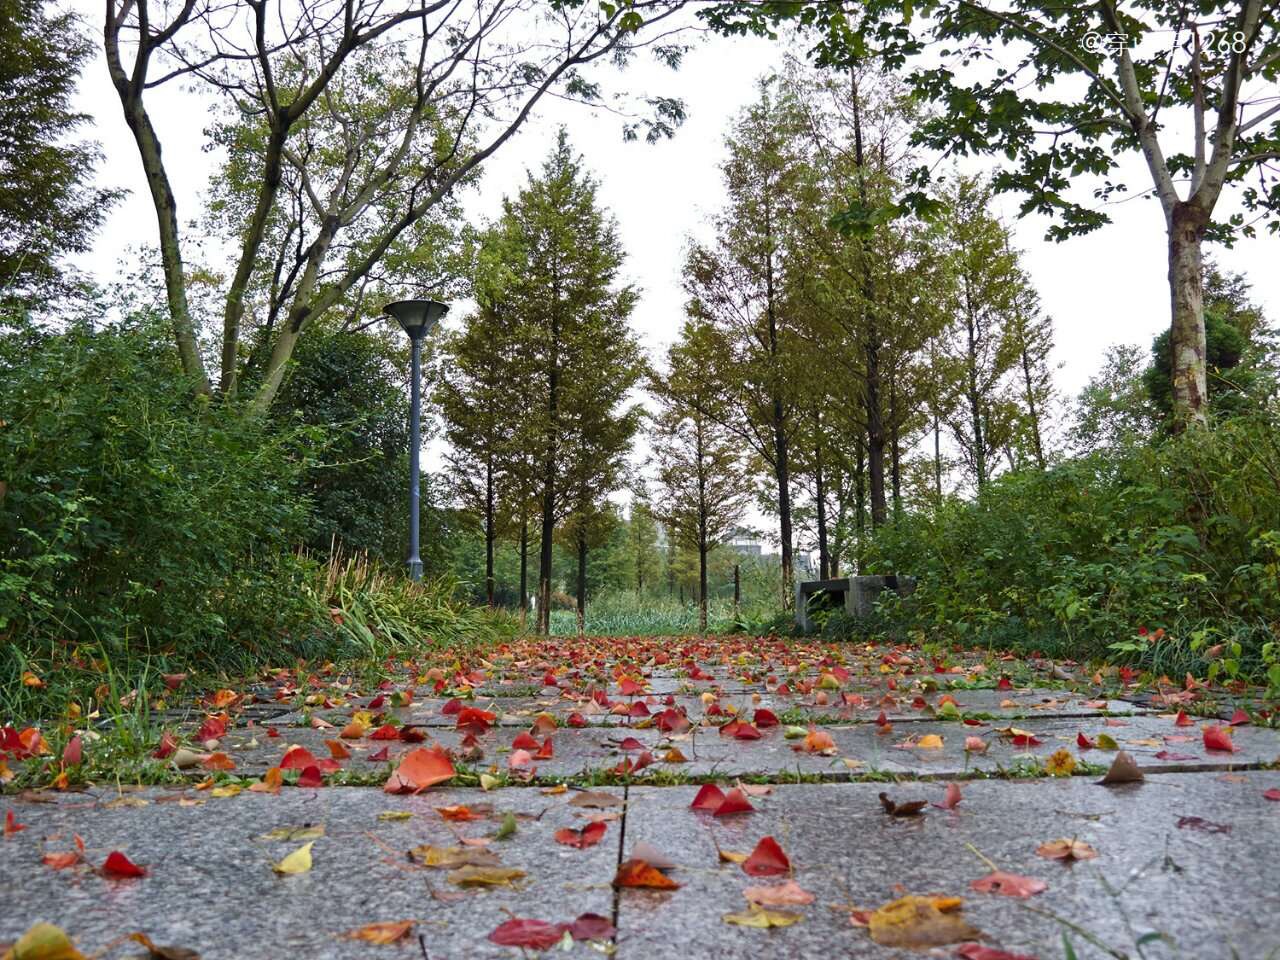 一场秋雨之后,石板小路上散落着树叶,轻轻走过,感受的是秋的意境.